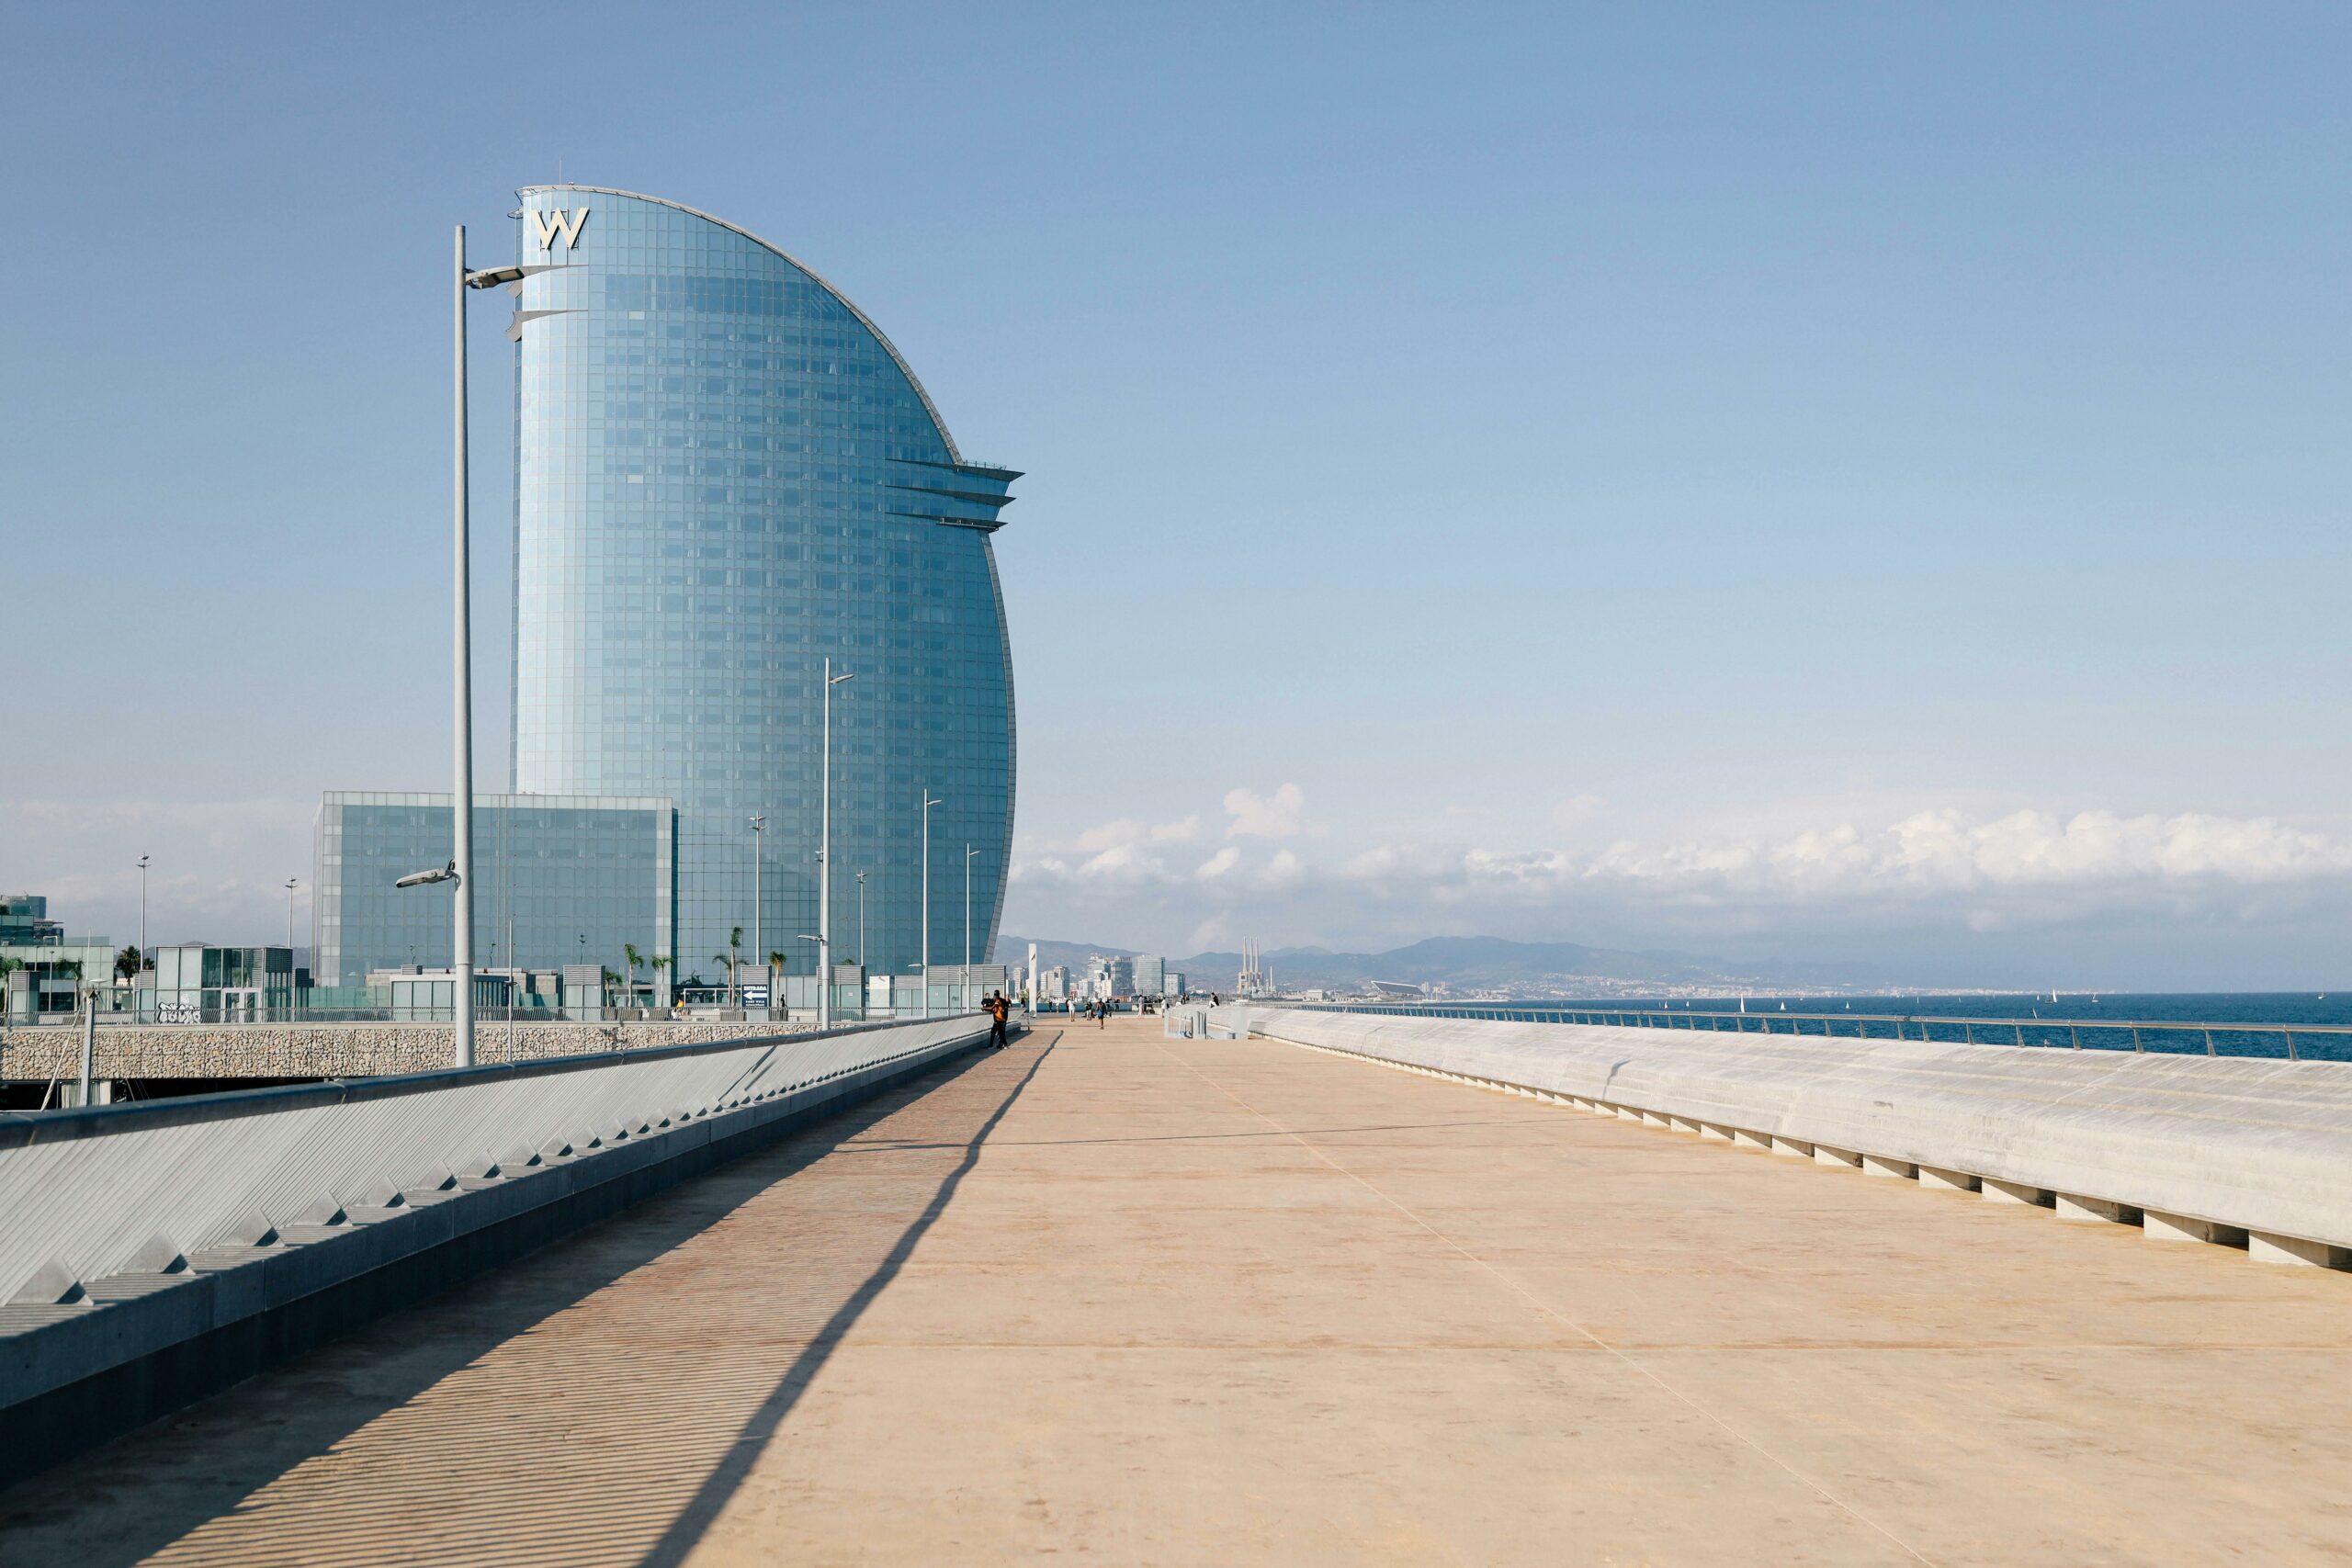 Vista del paseo marítimo de la Barceloneta con el hotel W Barcelona, en forma de vela, a la izquierda y el mar de fondo